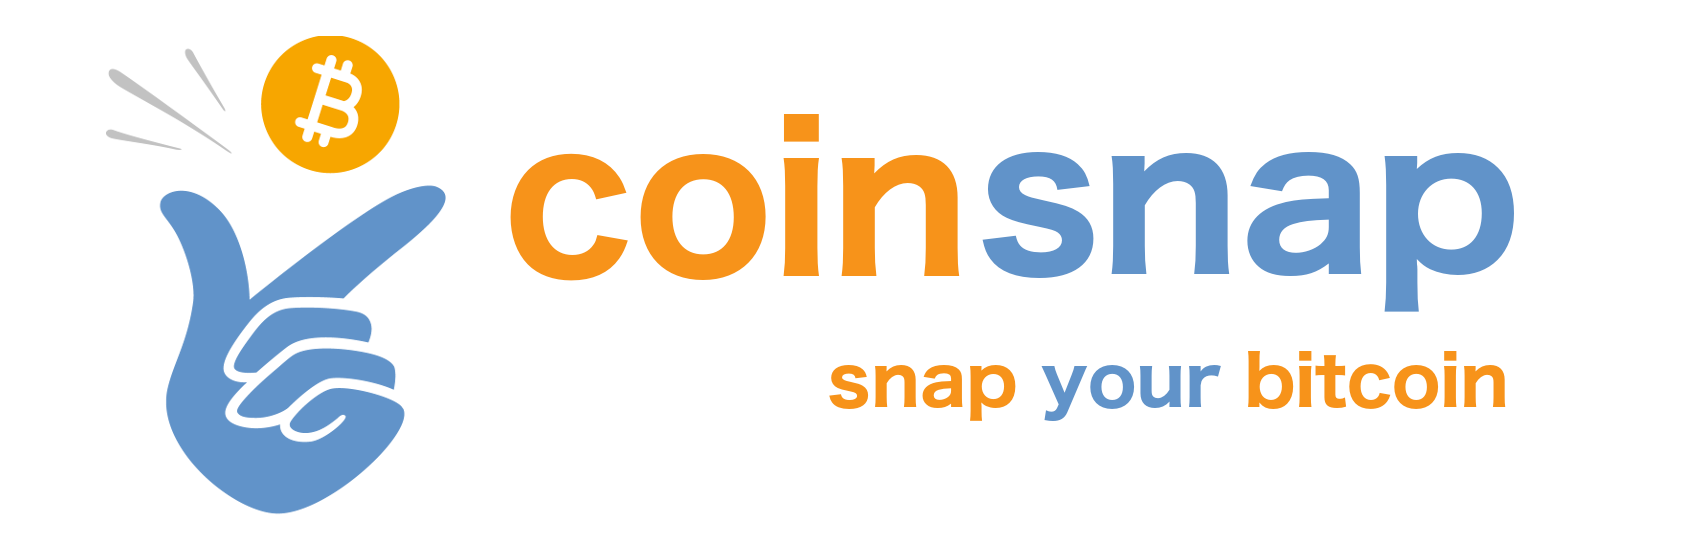 Coinsnap snap your Bitcoin